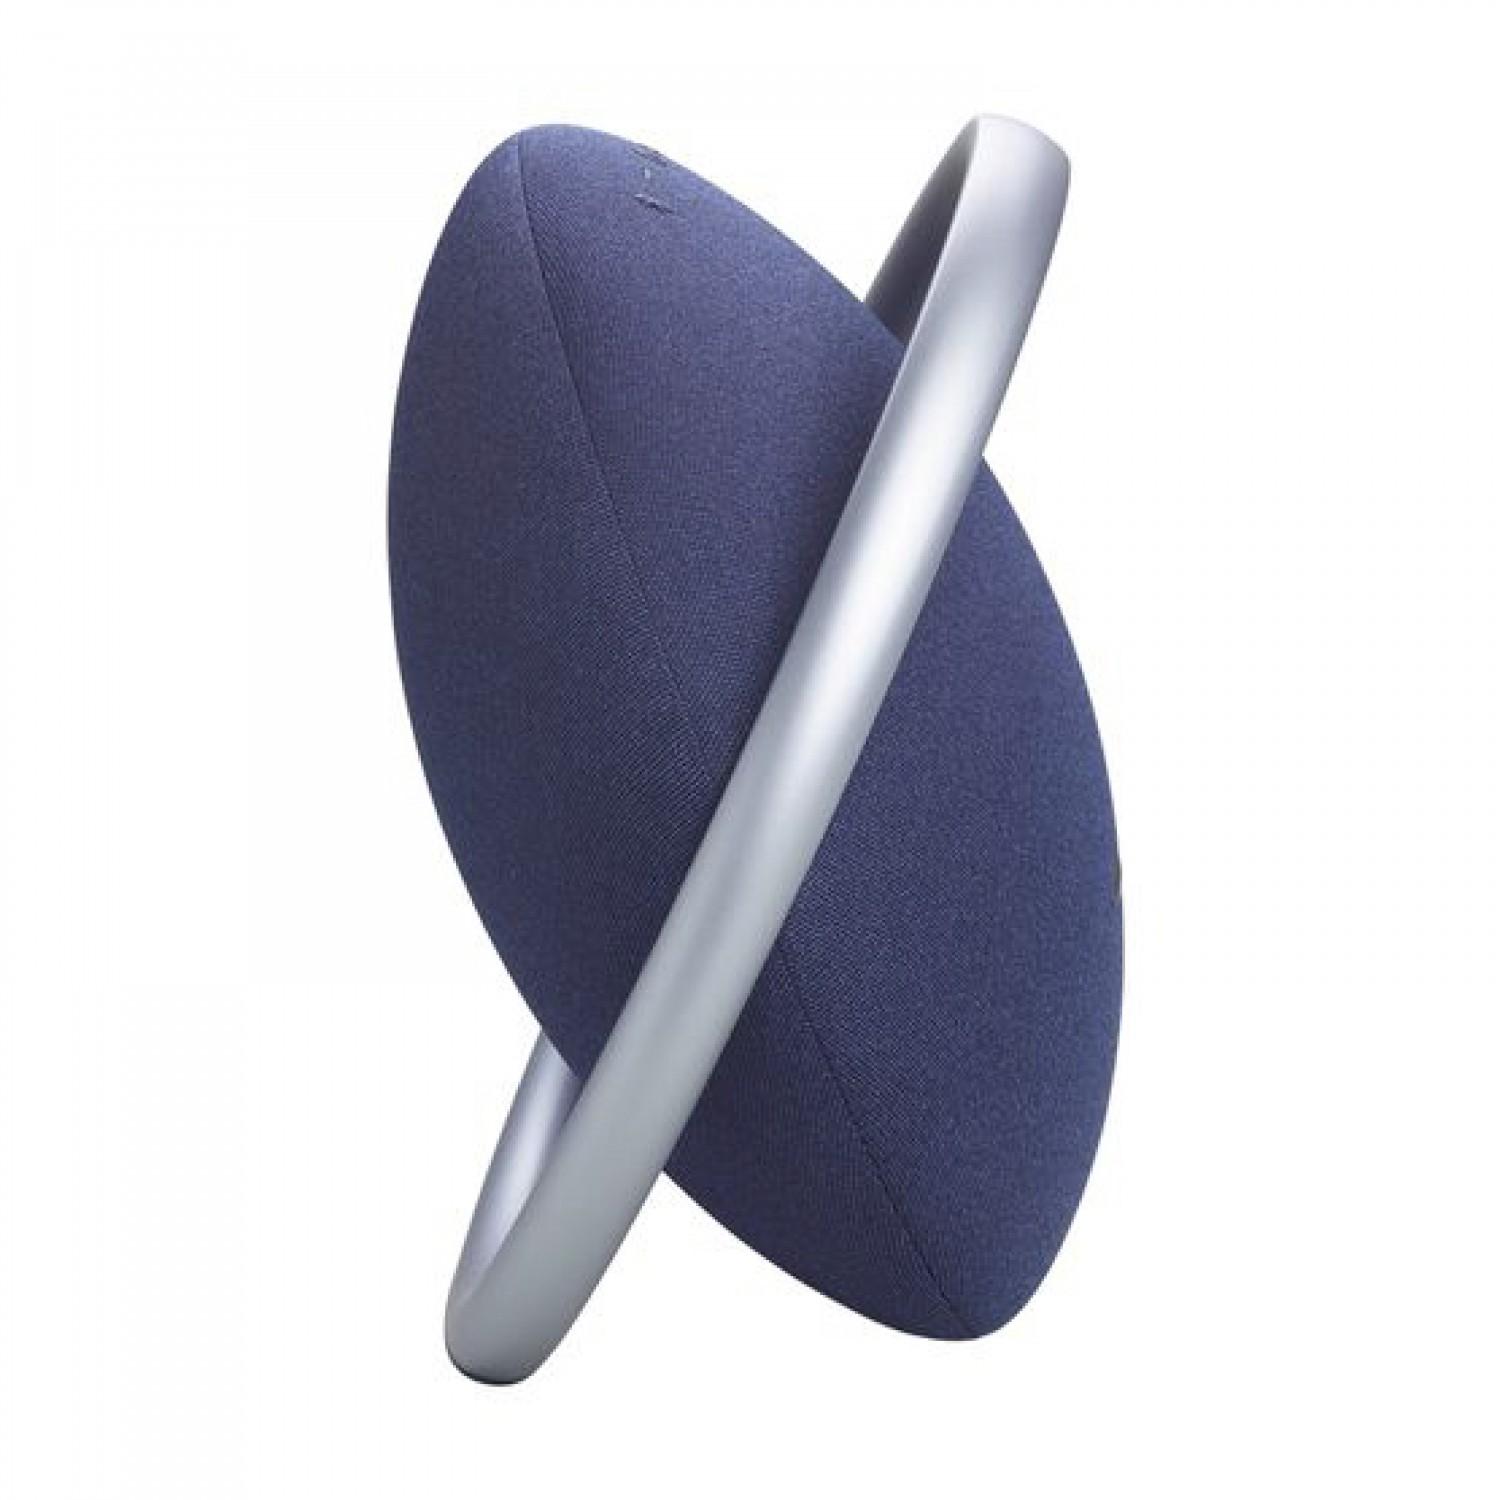 سبيكر محمول أونيكس 8 أزرق هارمان كاردون Harman Kardon Onyx Studio 8 Portable Wireless Speaker Blue